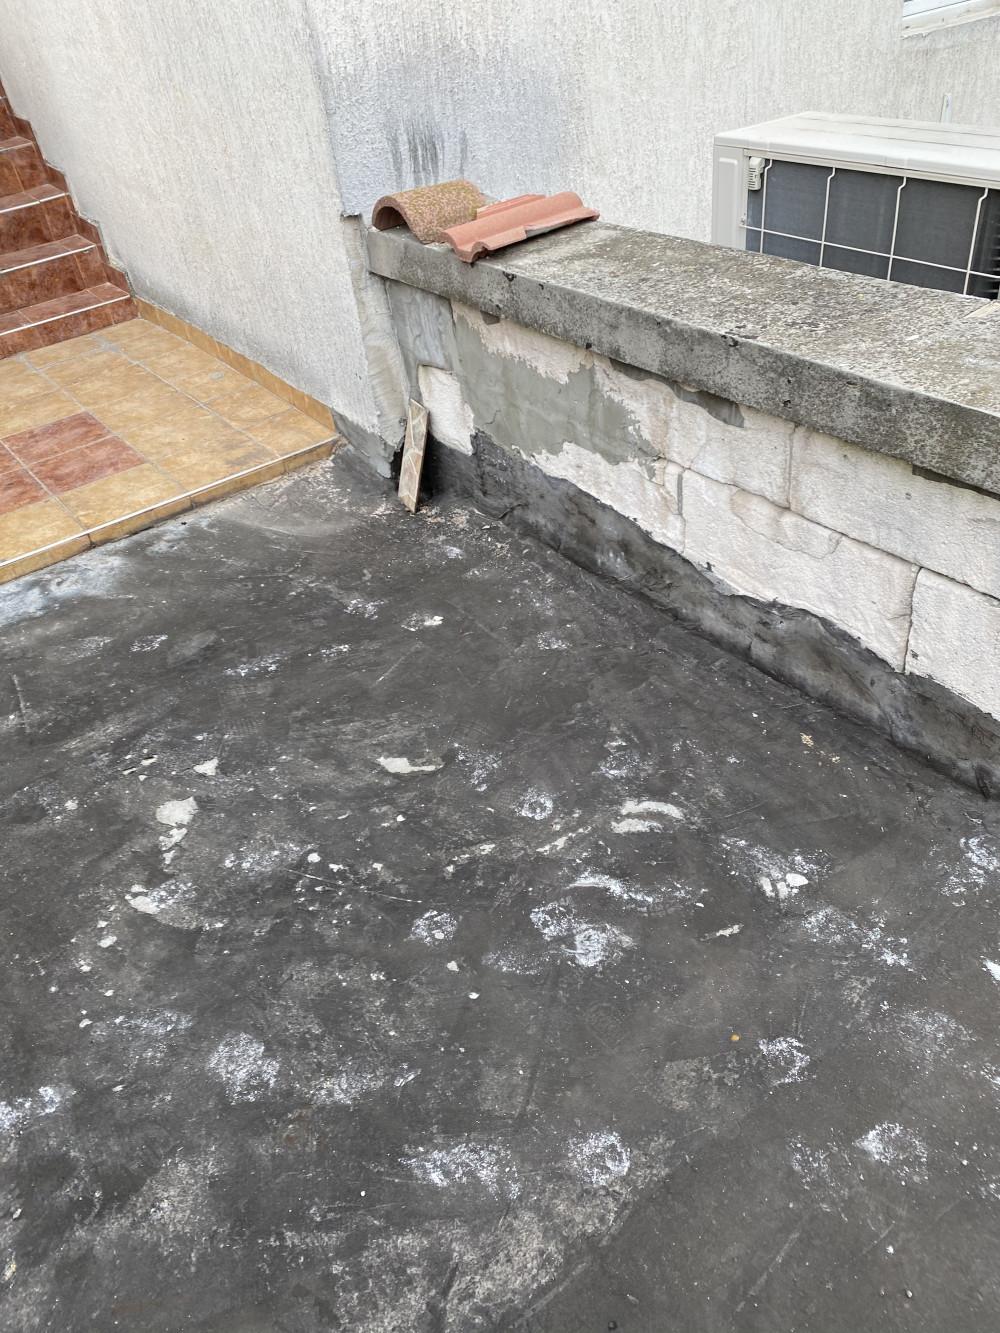 Битумна хидроизолация и лепене на плочки на тераса София ул.Цар Симеон